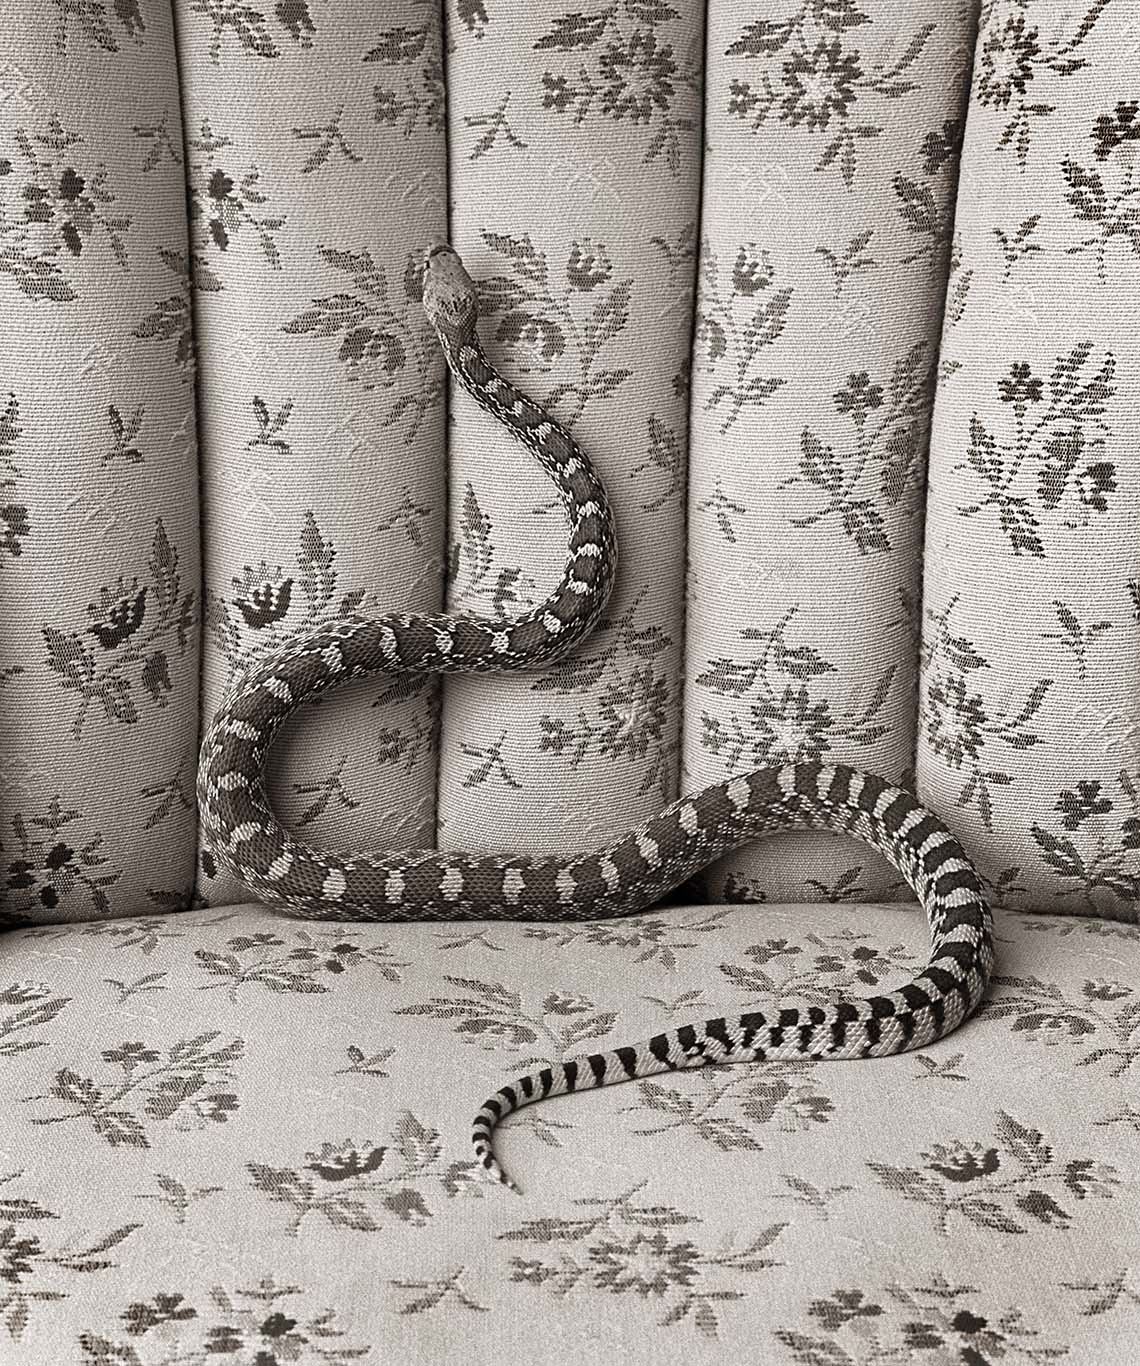 © James-H-Evans-Bull Snake on Sofa